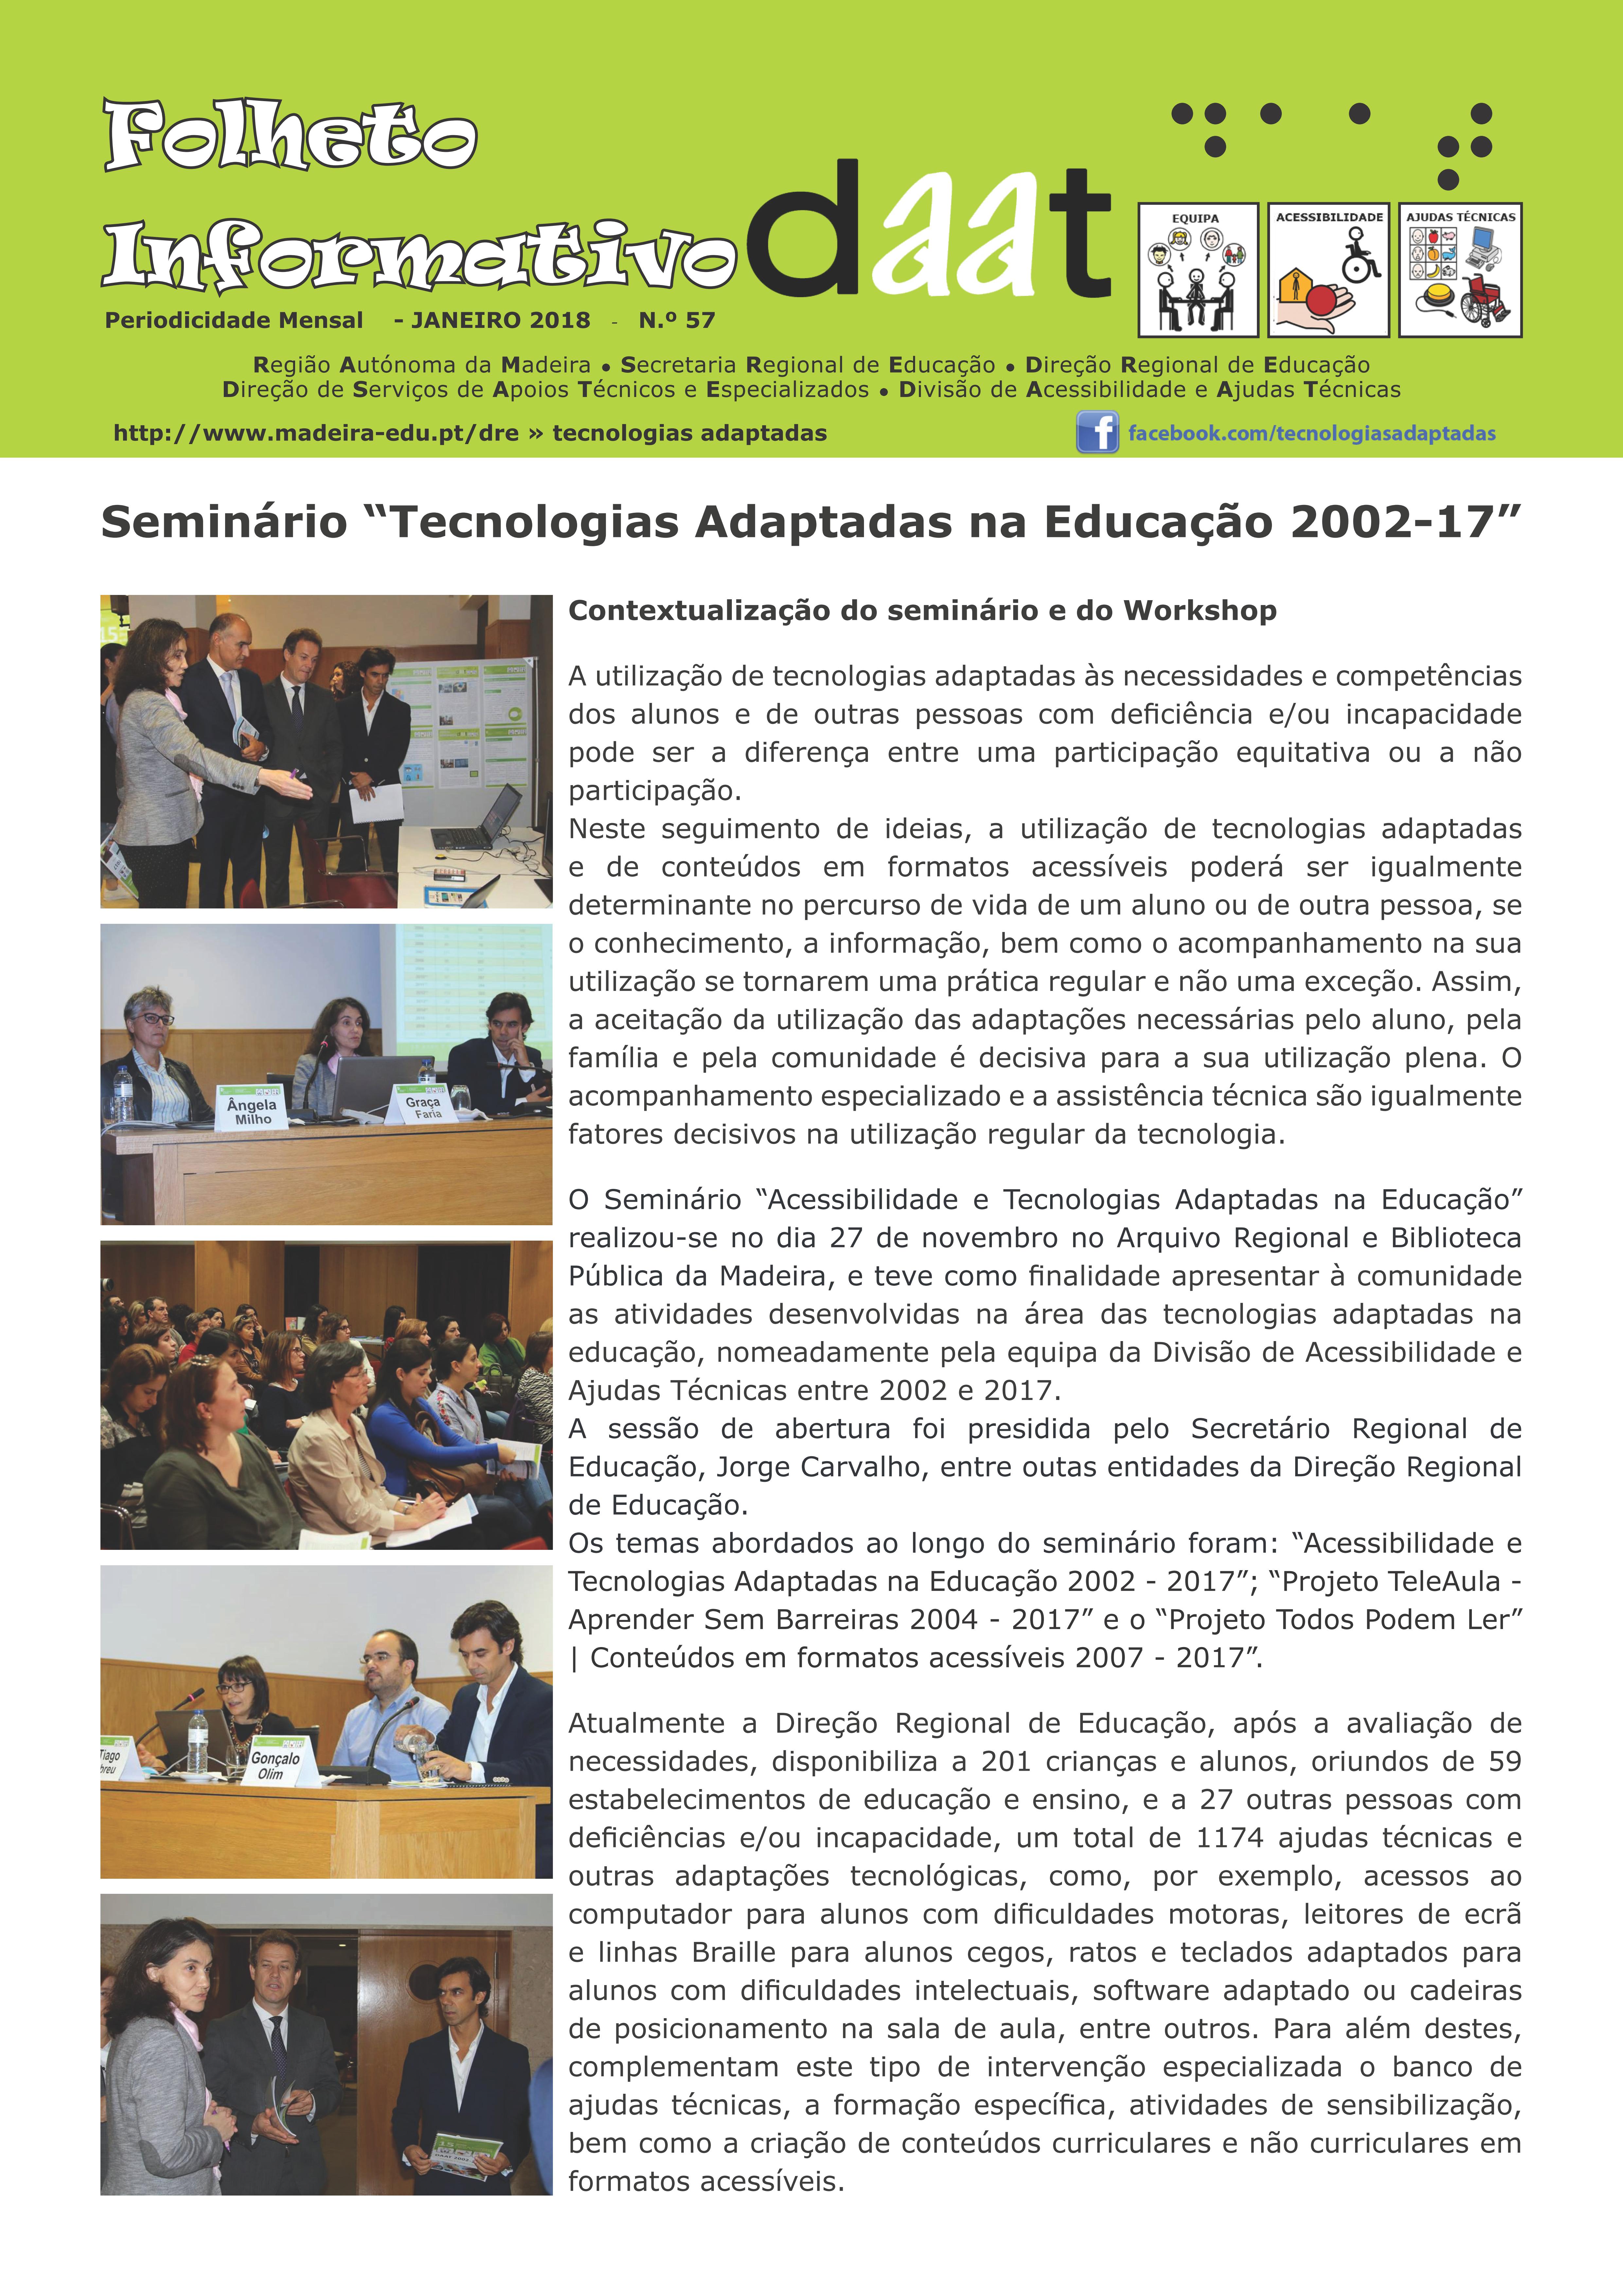 Seminário “Tecnologias Adaptadas na Educação 2002-2017”